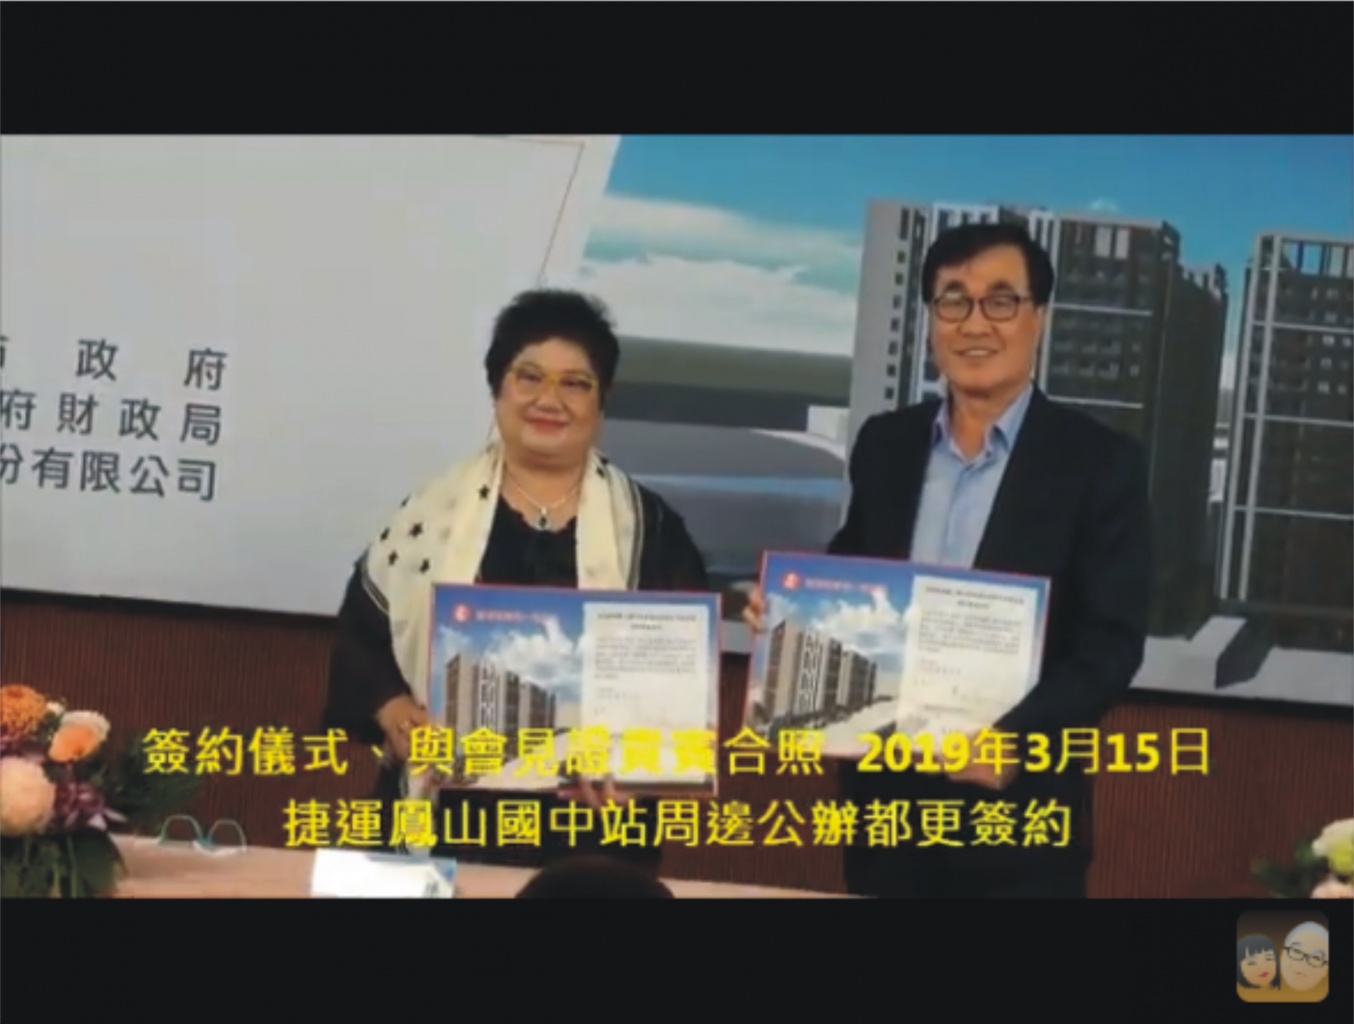 李四川副市長主持「高雄捷運鳳山國中站周邊地區公辦都市更新」簽約 改造市容、提供青年住宅